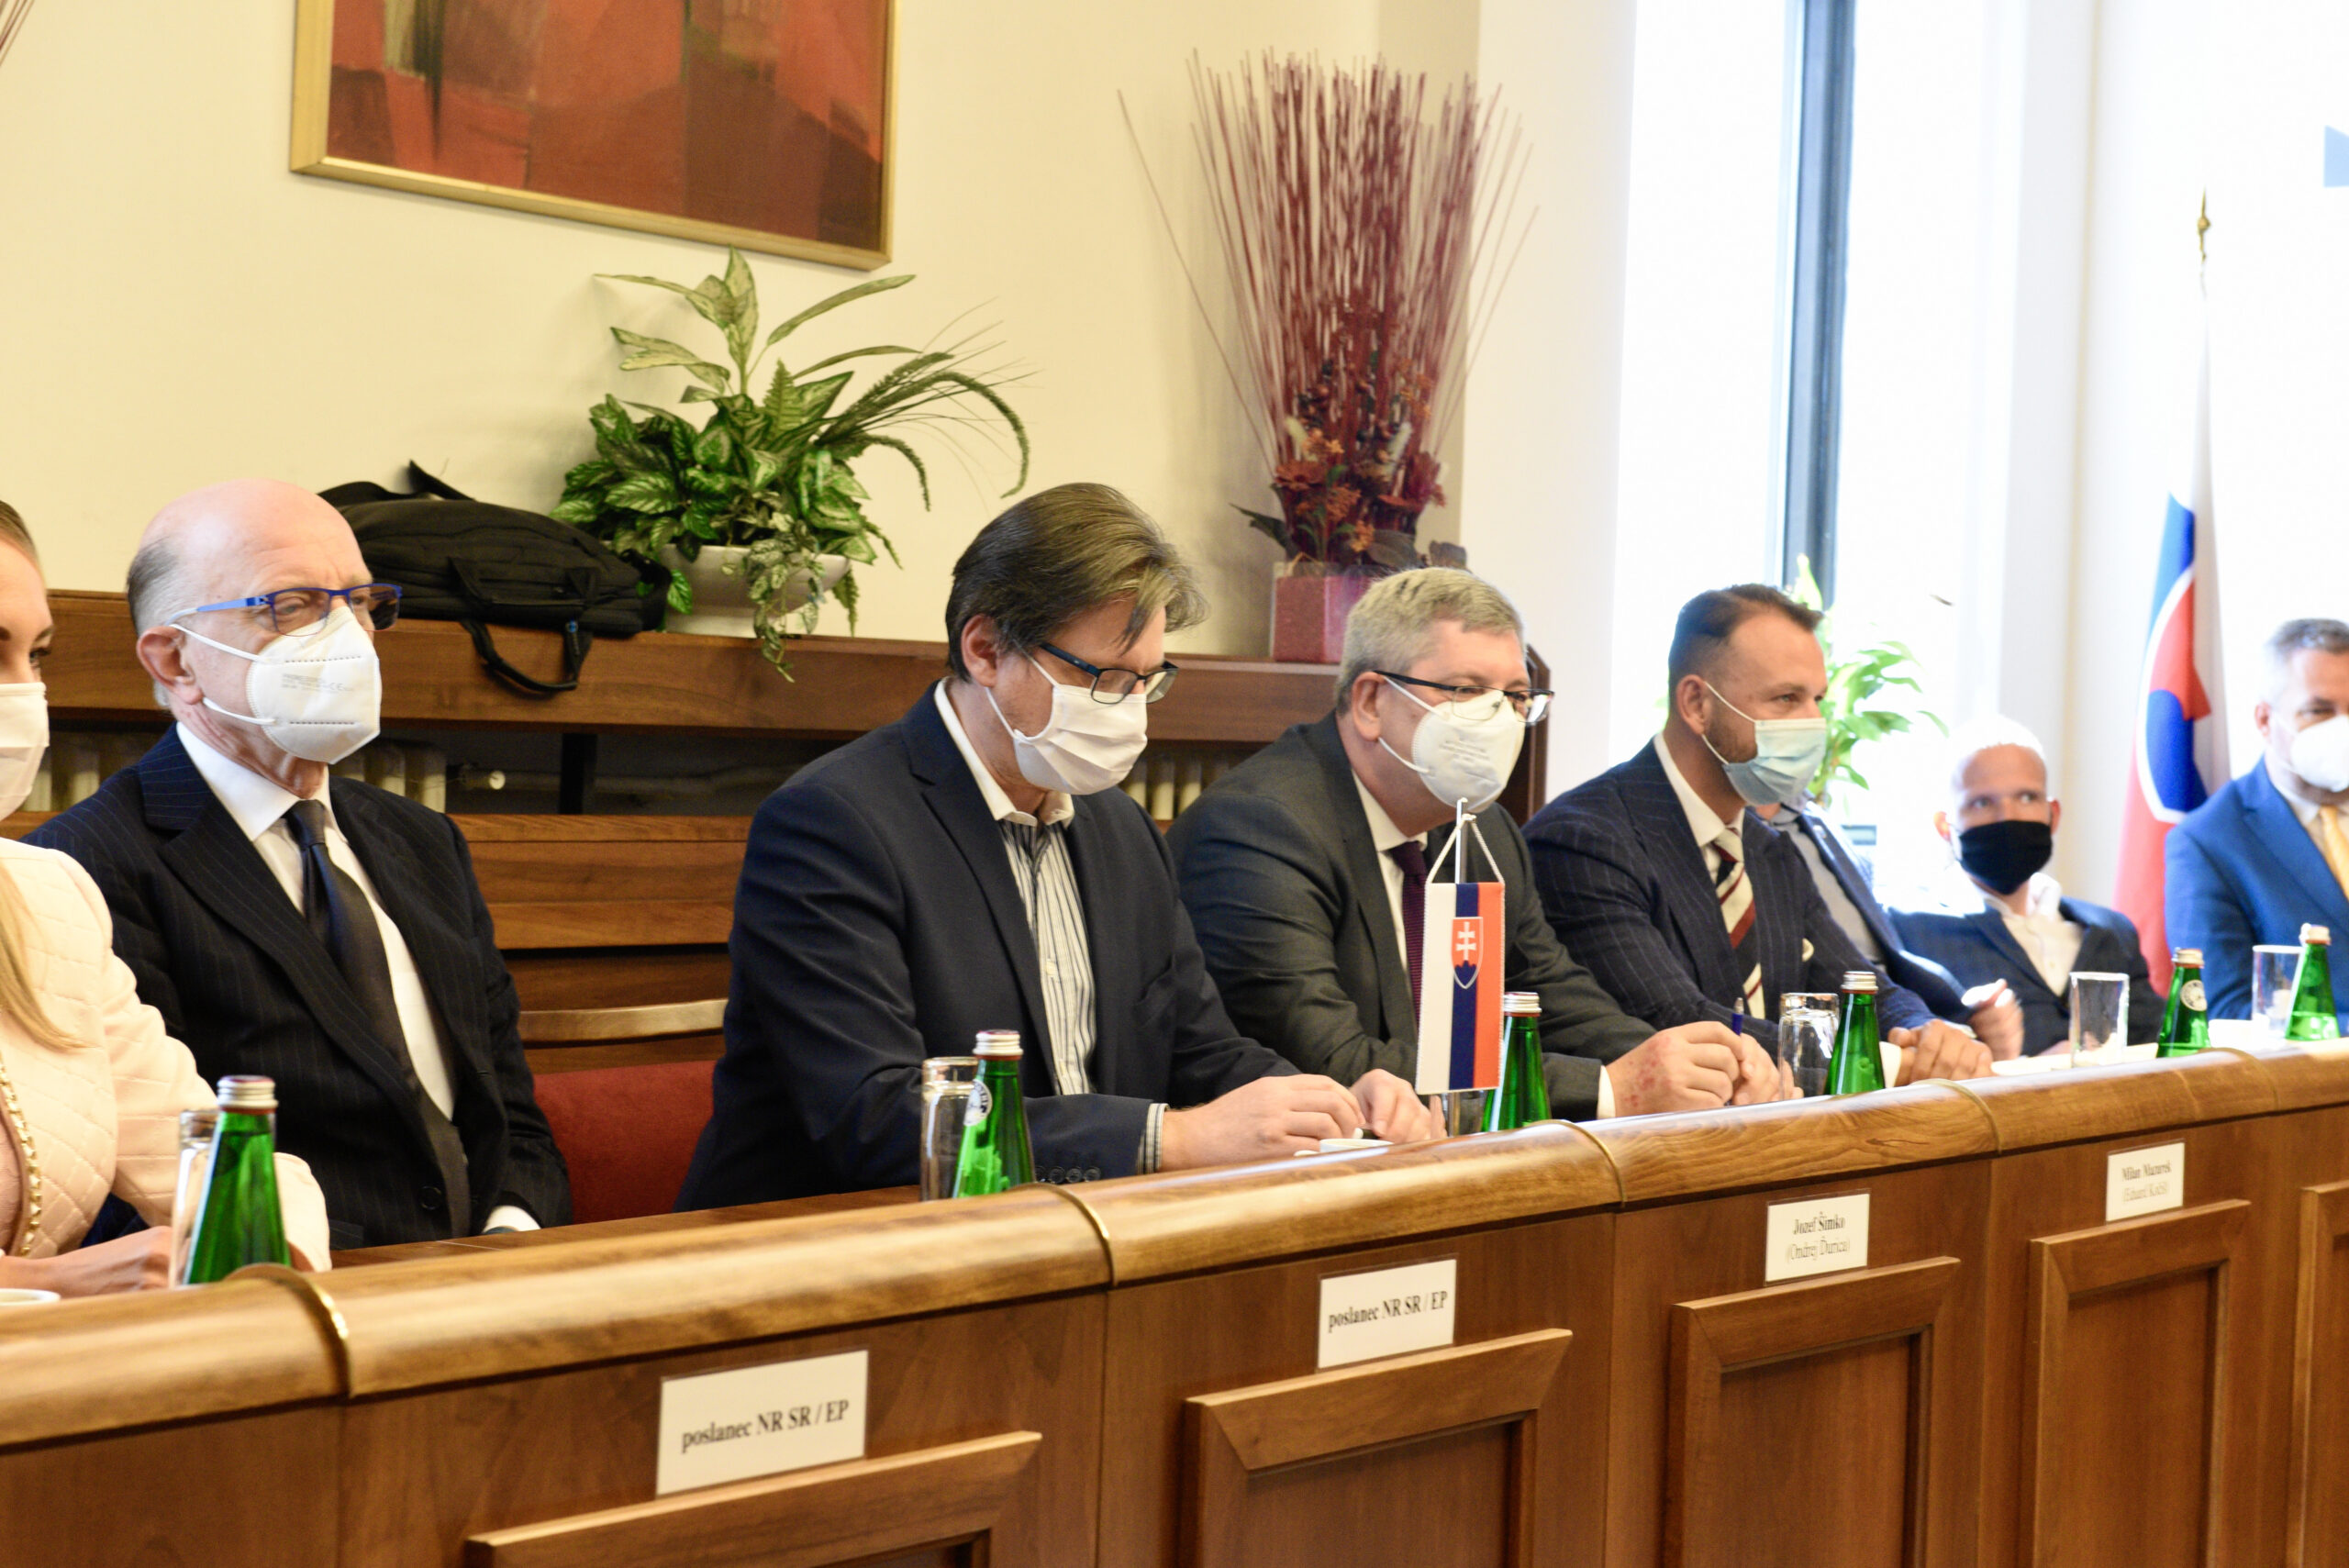 Benátska komisia na Ústavnoprávnom výbore parlamentu